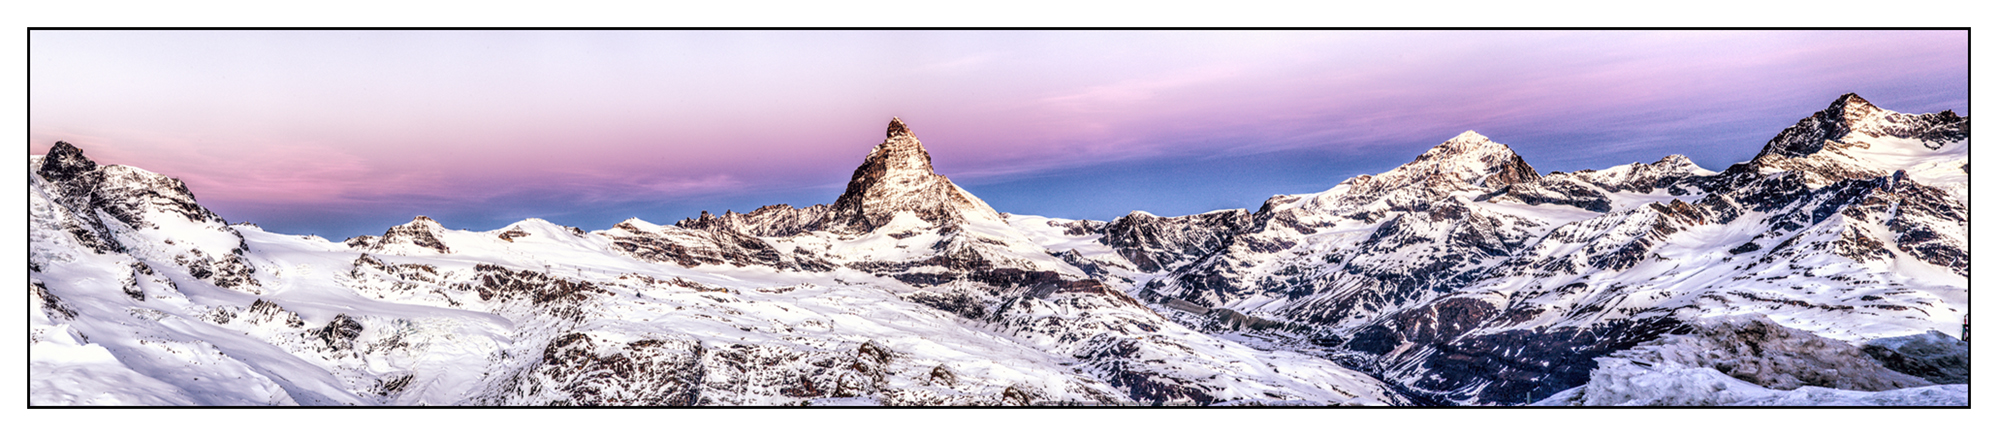 Matterhorn 2012